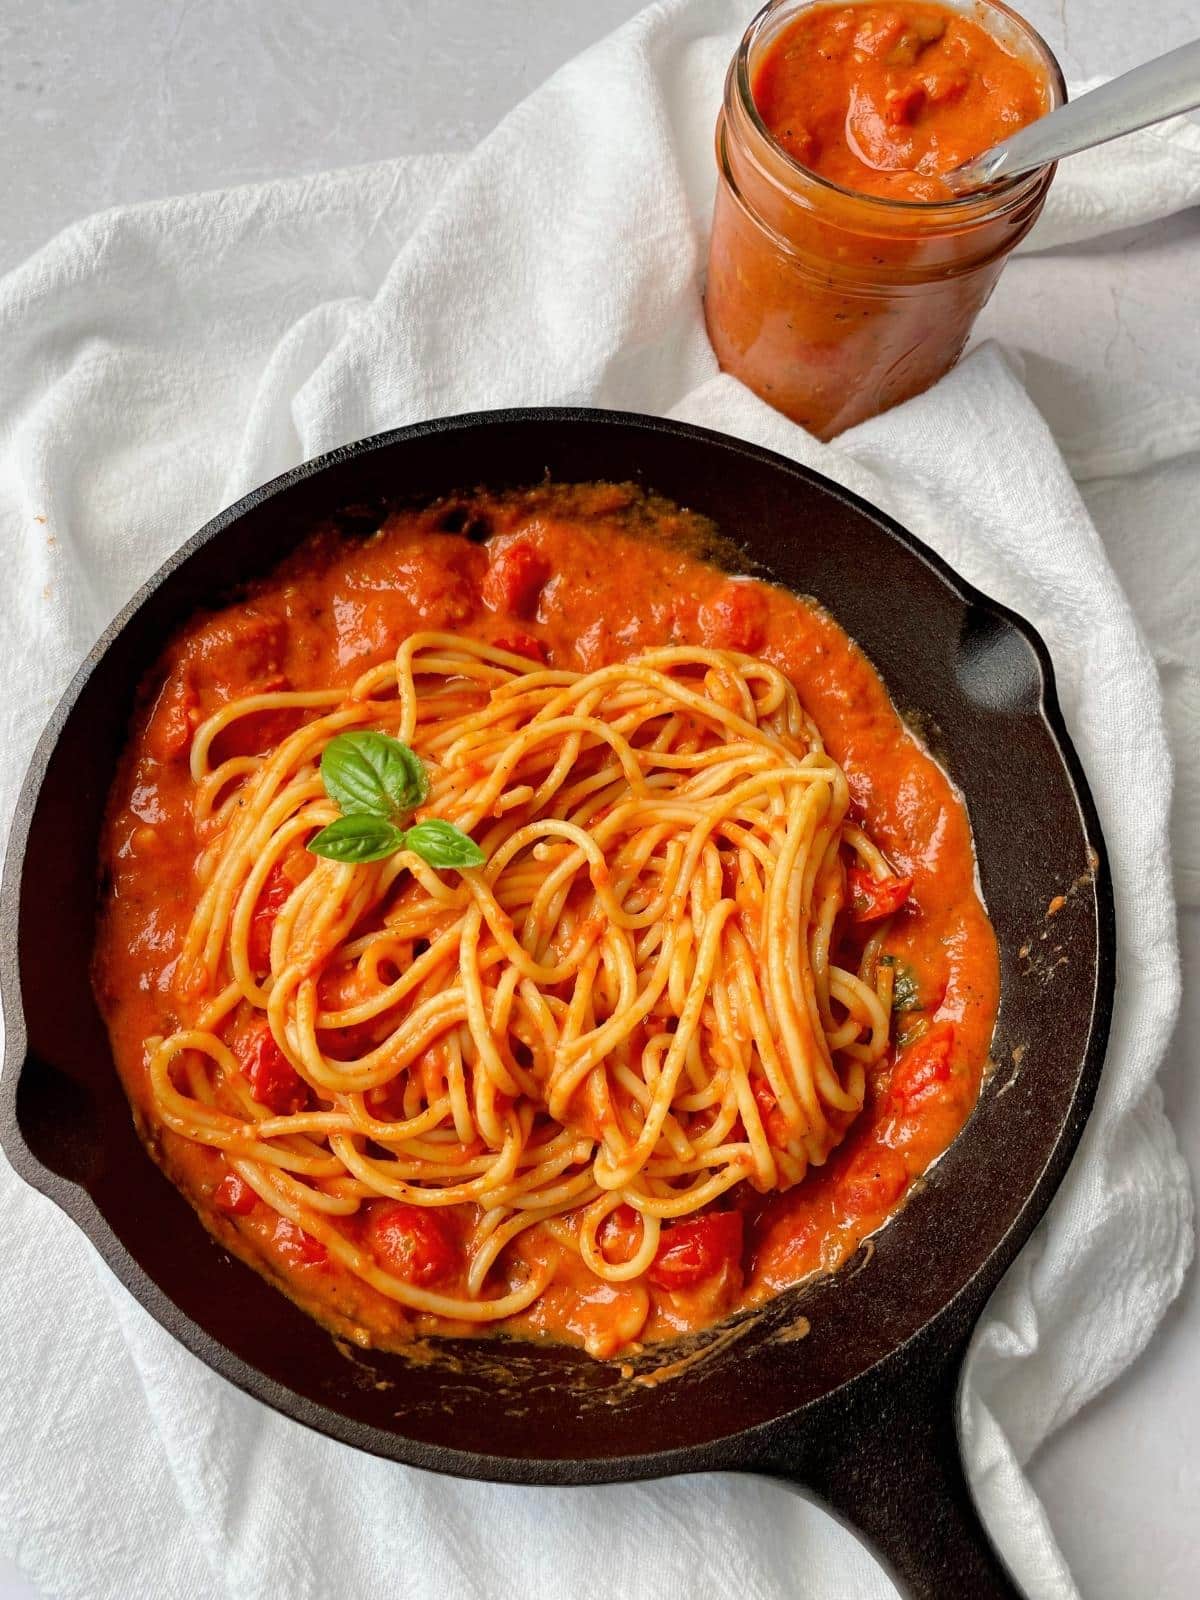 Cherry tomato sauce with spaghetti.